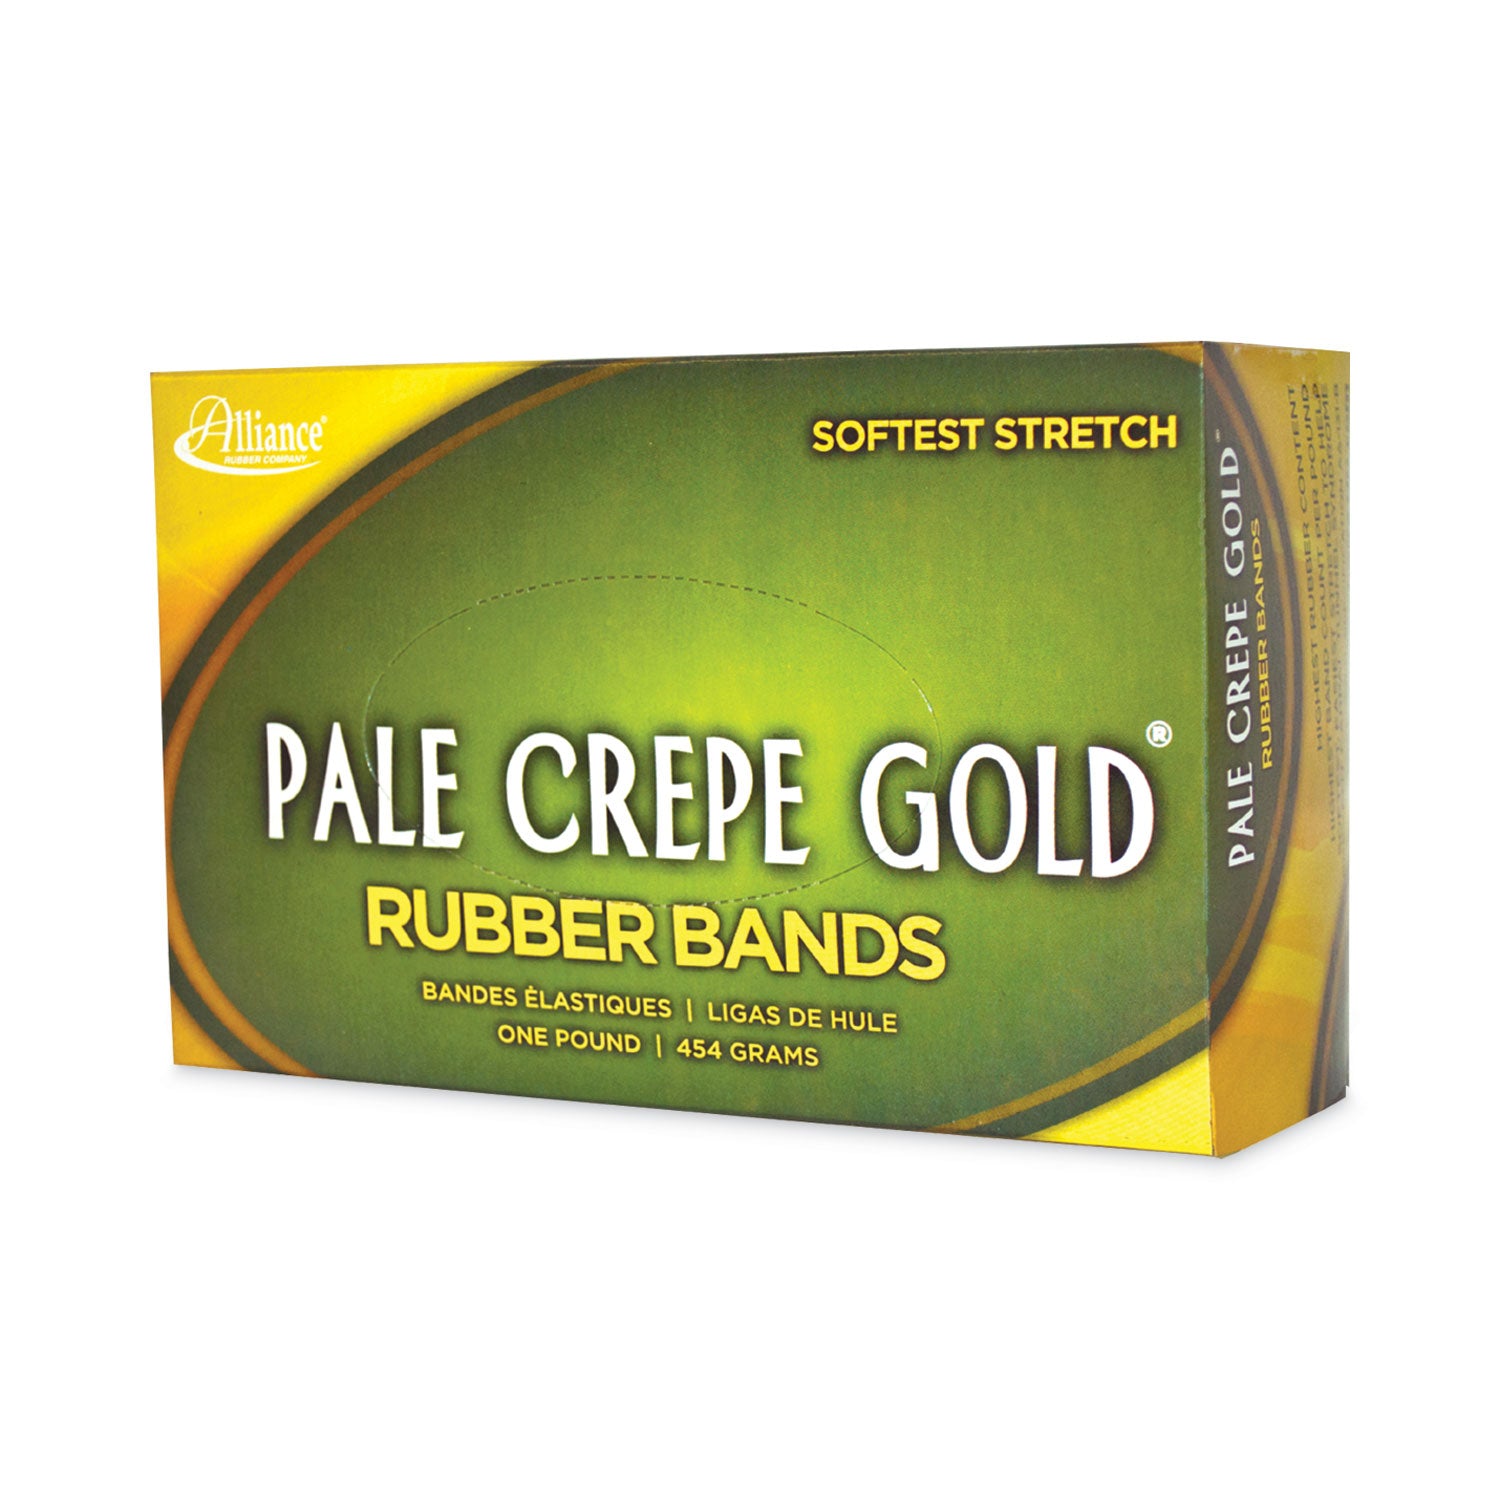 Pale Crepe Gold Rubber Bands, Size 117B, 0.06" Gauge, Golden Crepe, 1 lb Box, 300/Box - 